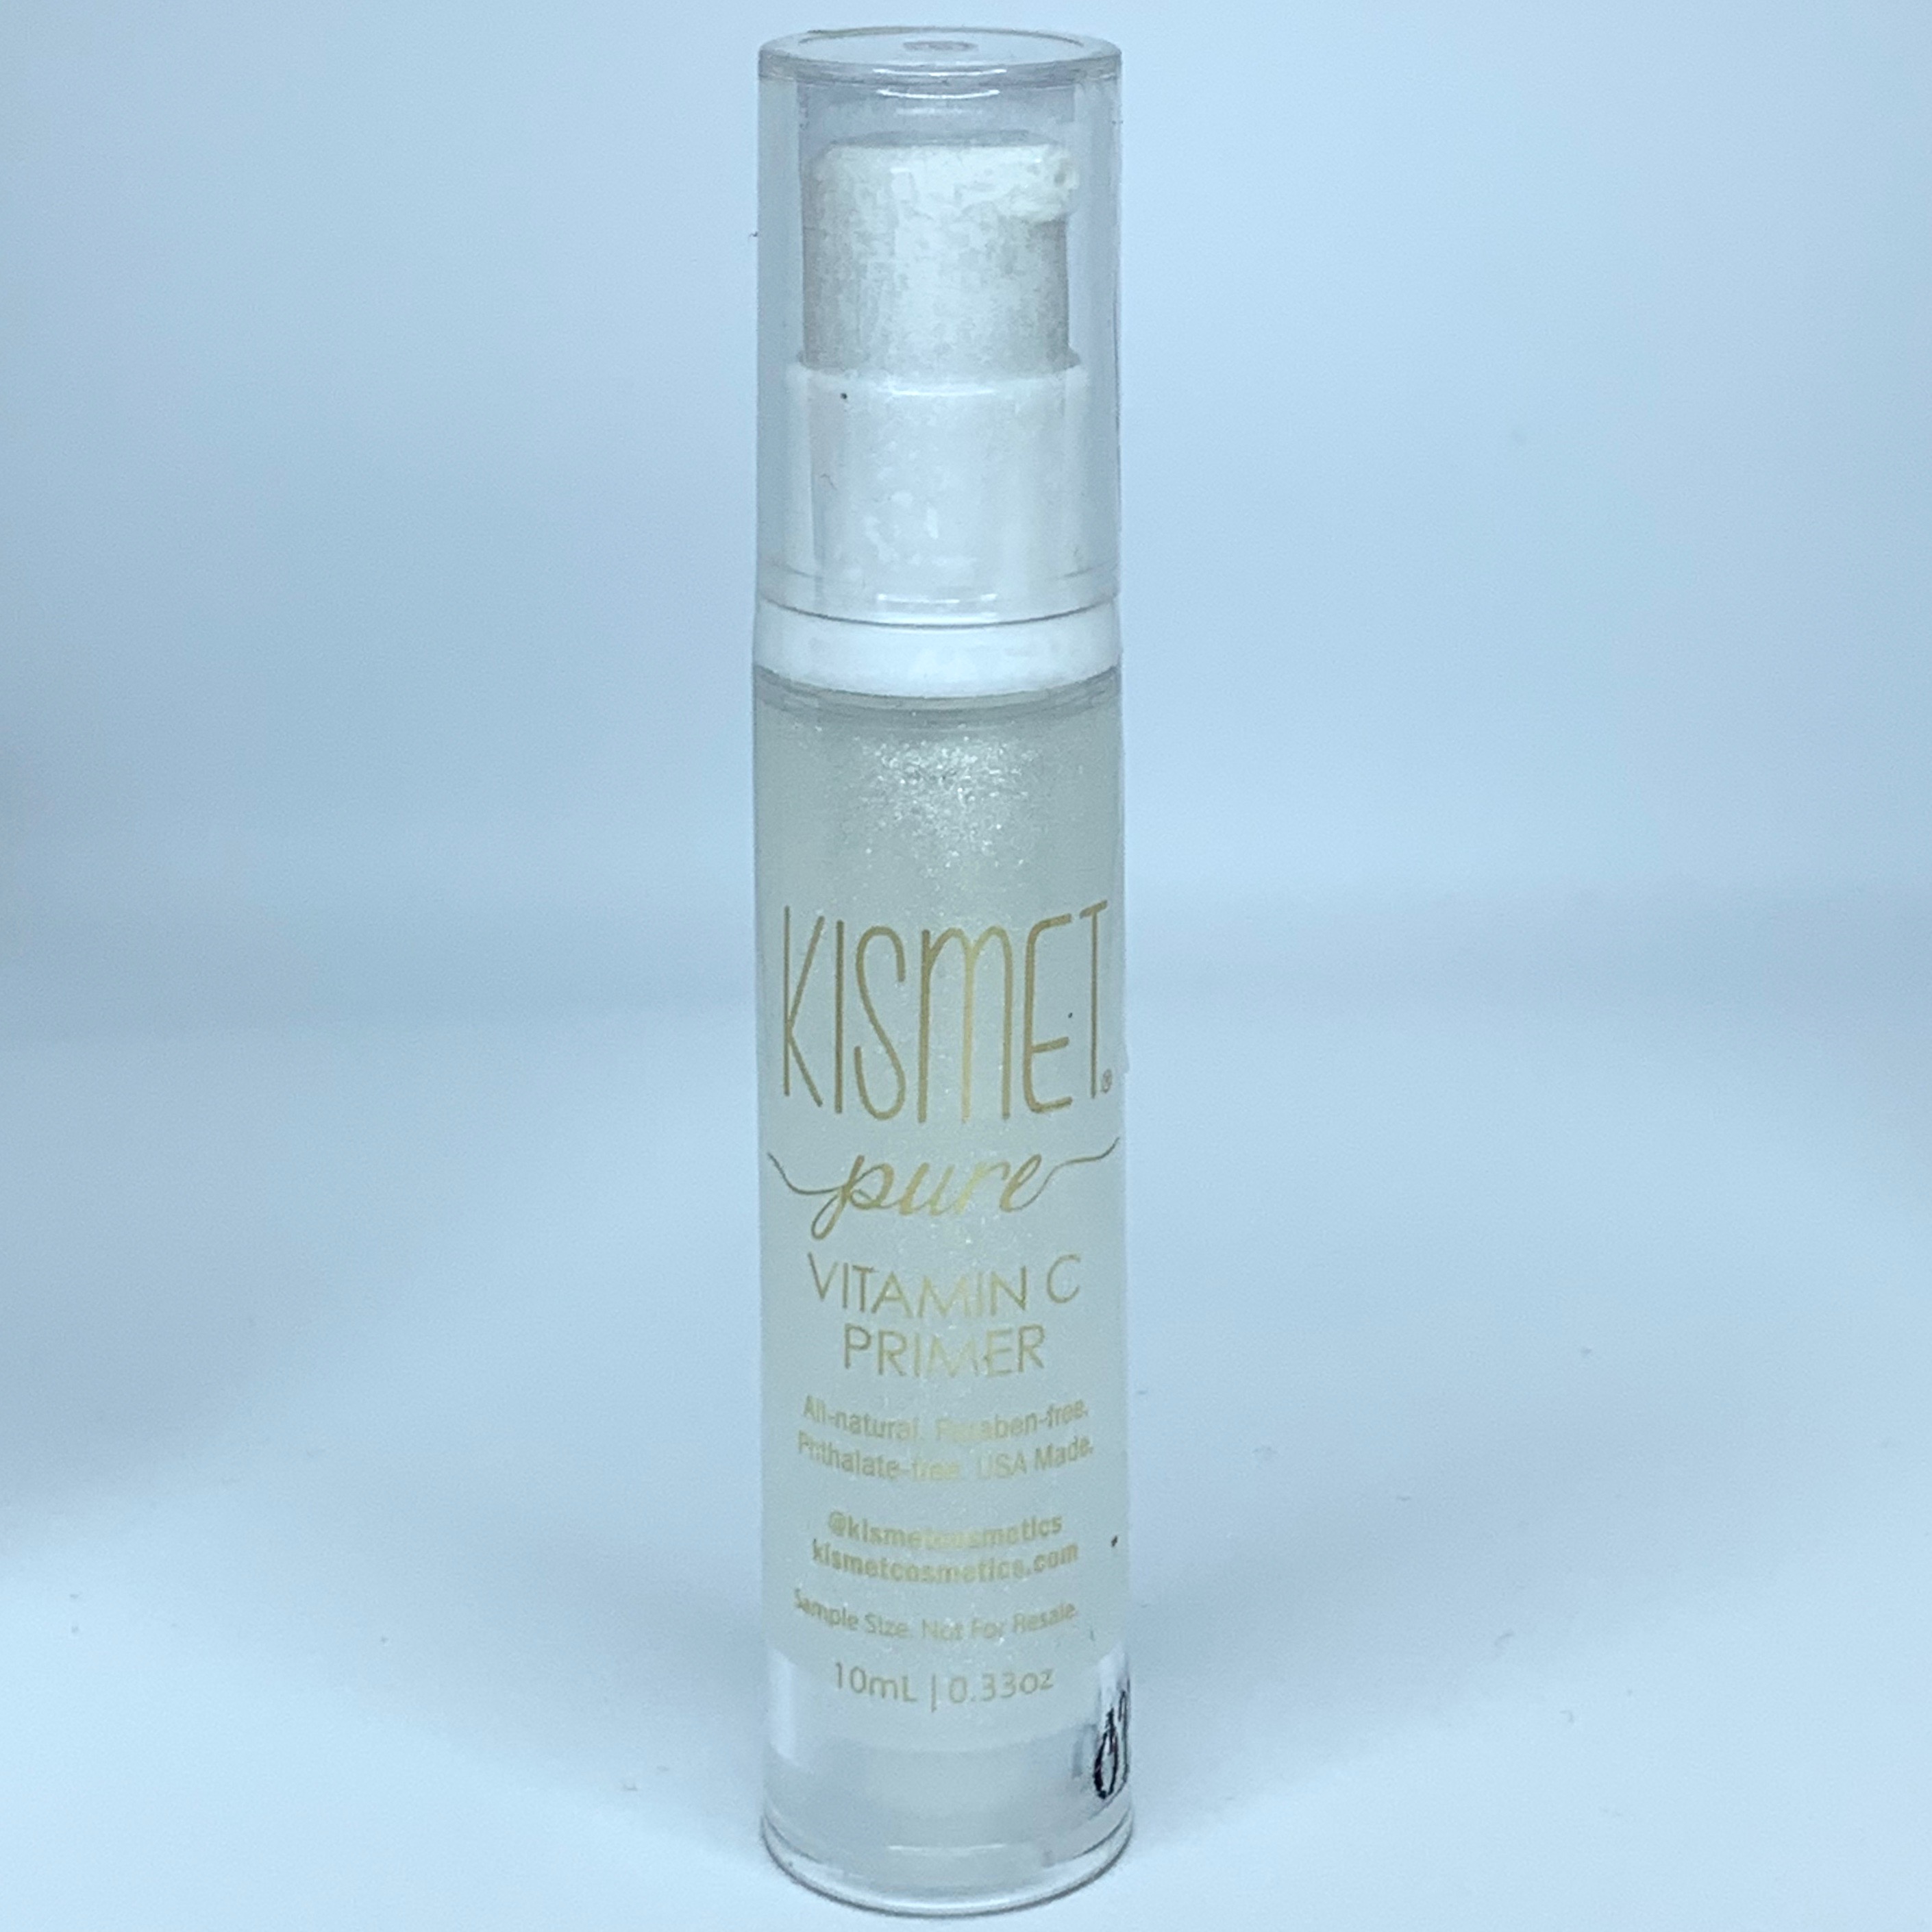 Kismet Pure Vitamin C Primer for Ipsy Glam Bag April 2020